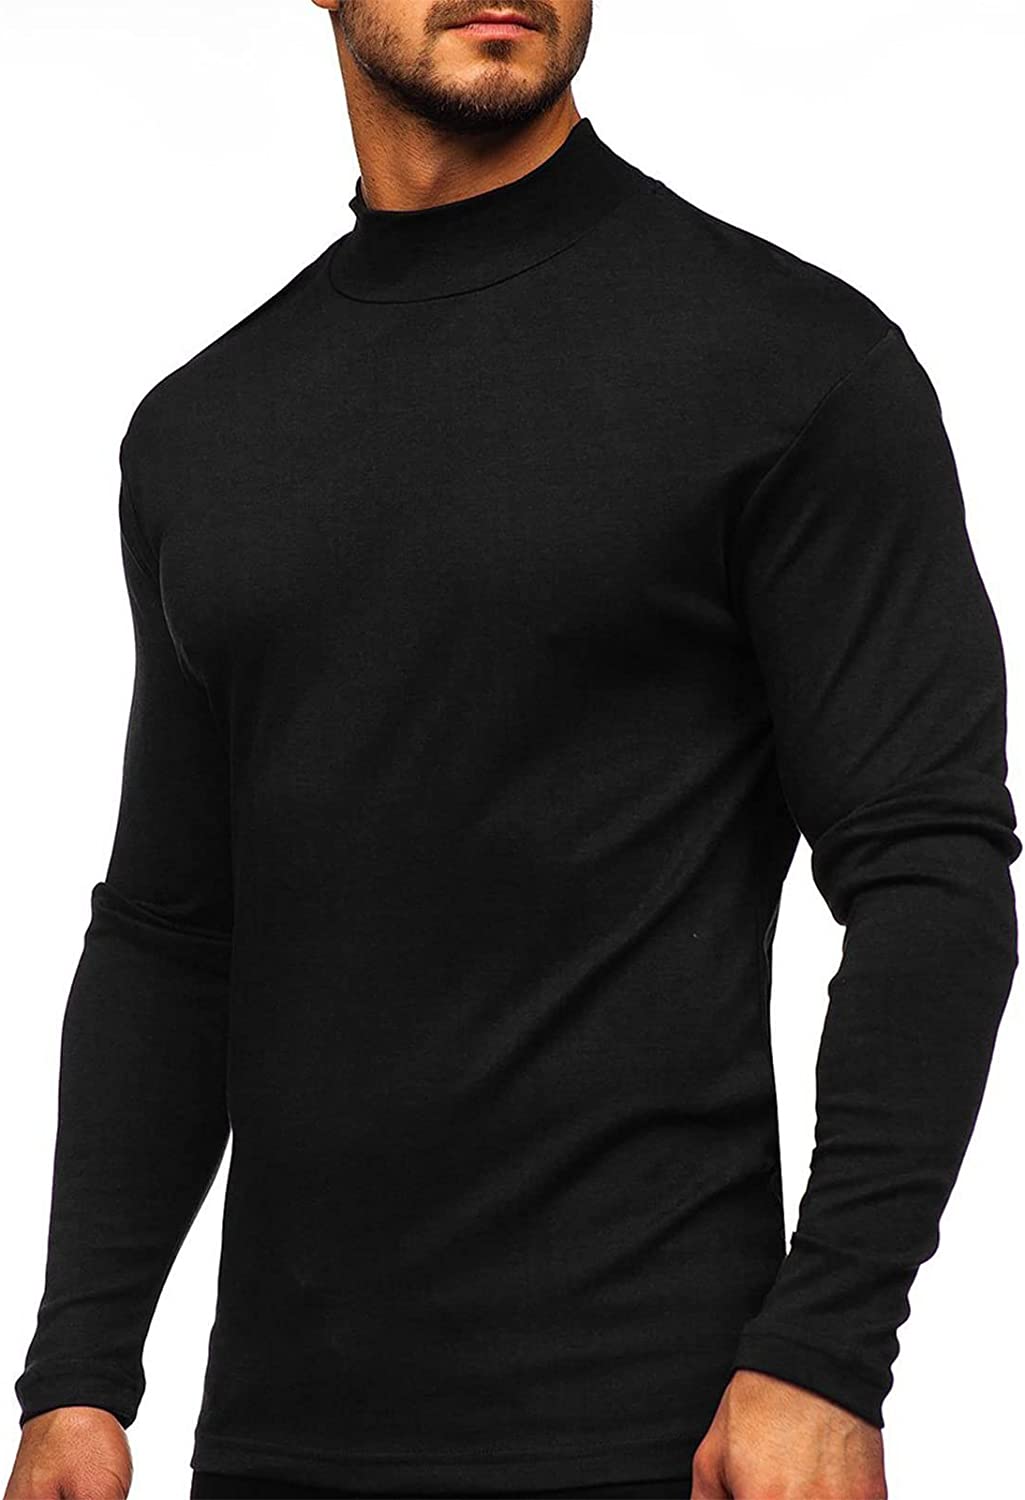 Turtleneck Black Basic Pullover Long Sleeve Men's Shirt